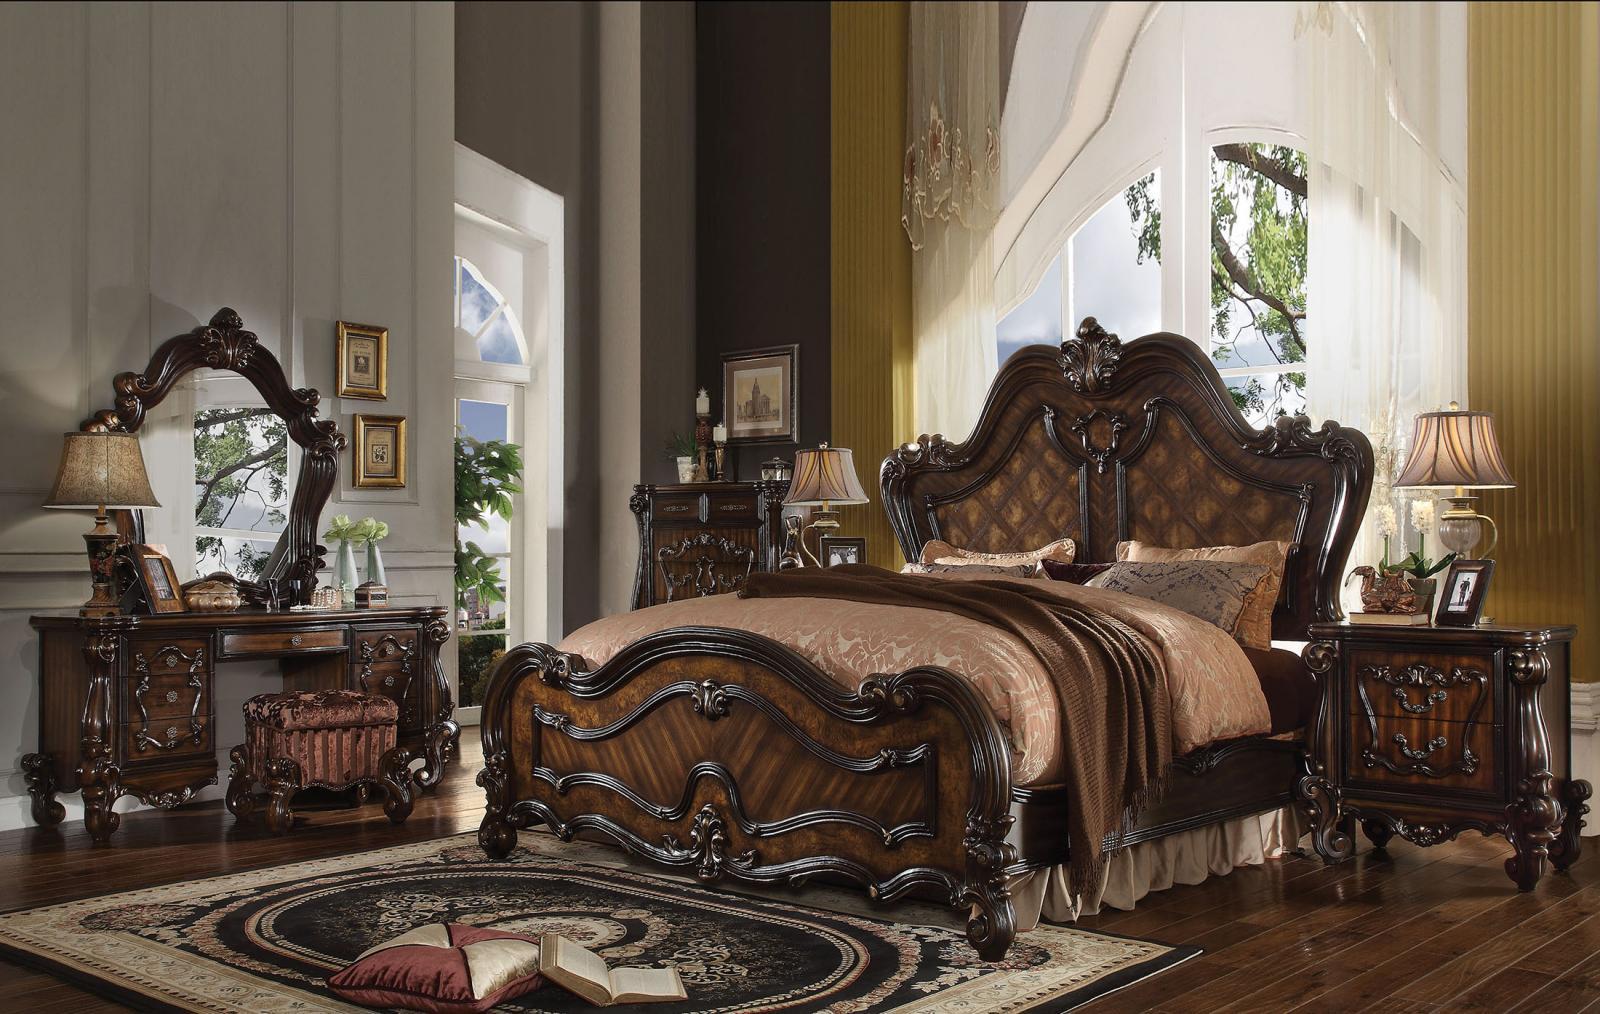 

    
Royal Queen Standard Bedroom Set 6 Pcs Cherry Oak Classic
